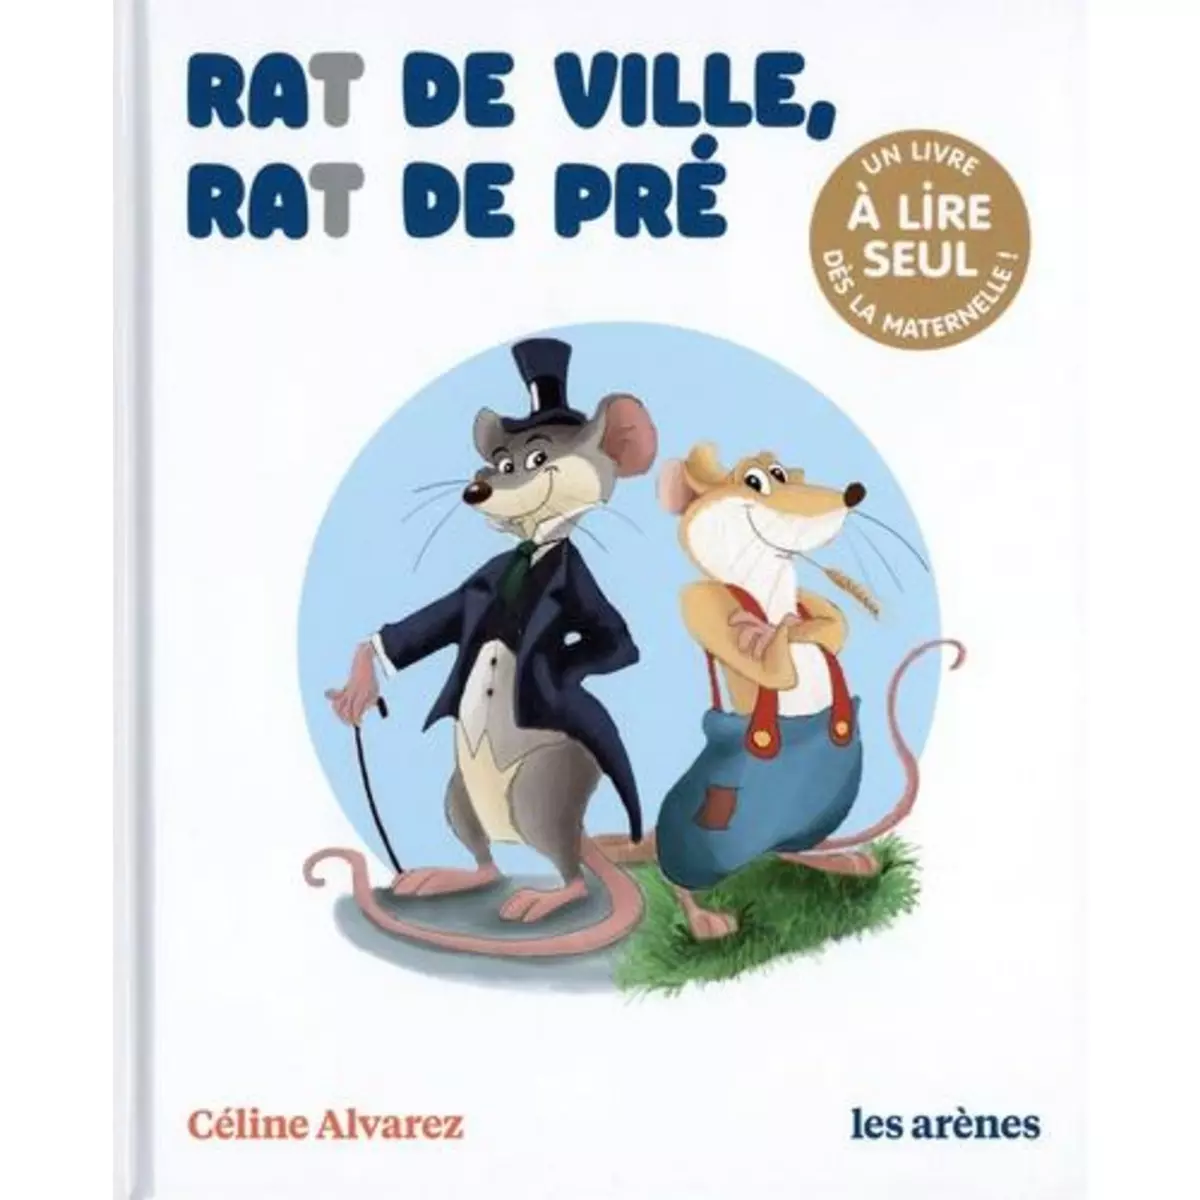  RAT DE VILLE, RAT DE PRE. UN LIVRE A LIRE SEUL DES LA MATERNELLE, Alvarez Céline